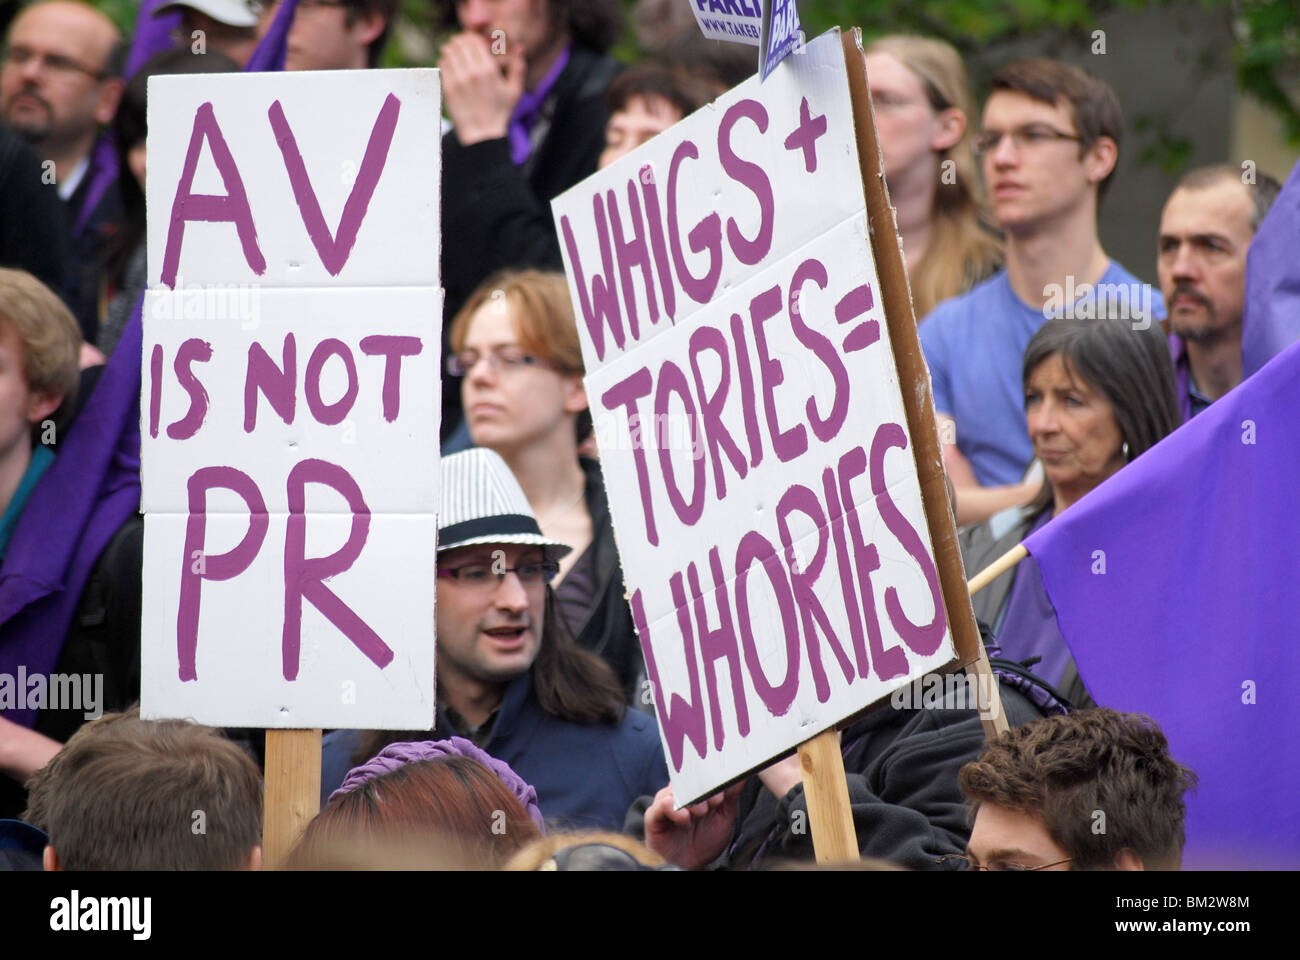 Riportare il Parlamento protesta Westminster elezioni generali 2010 Foto Stock